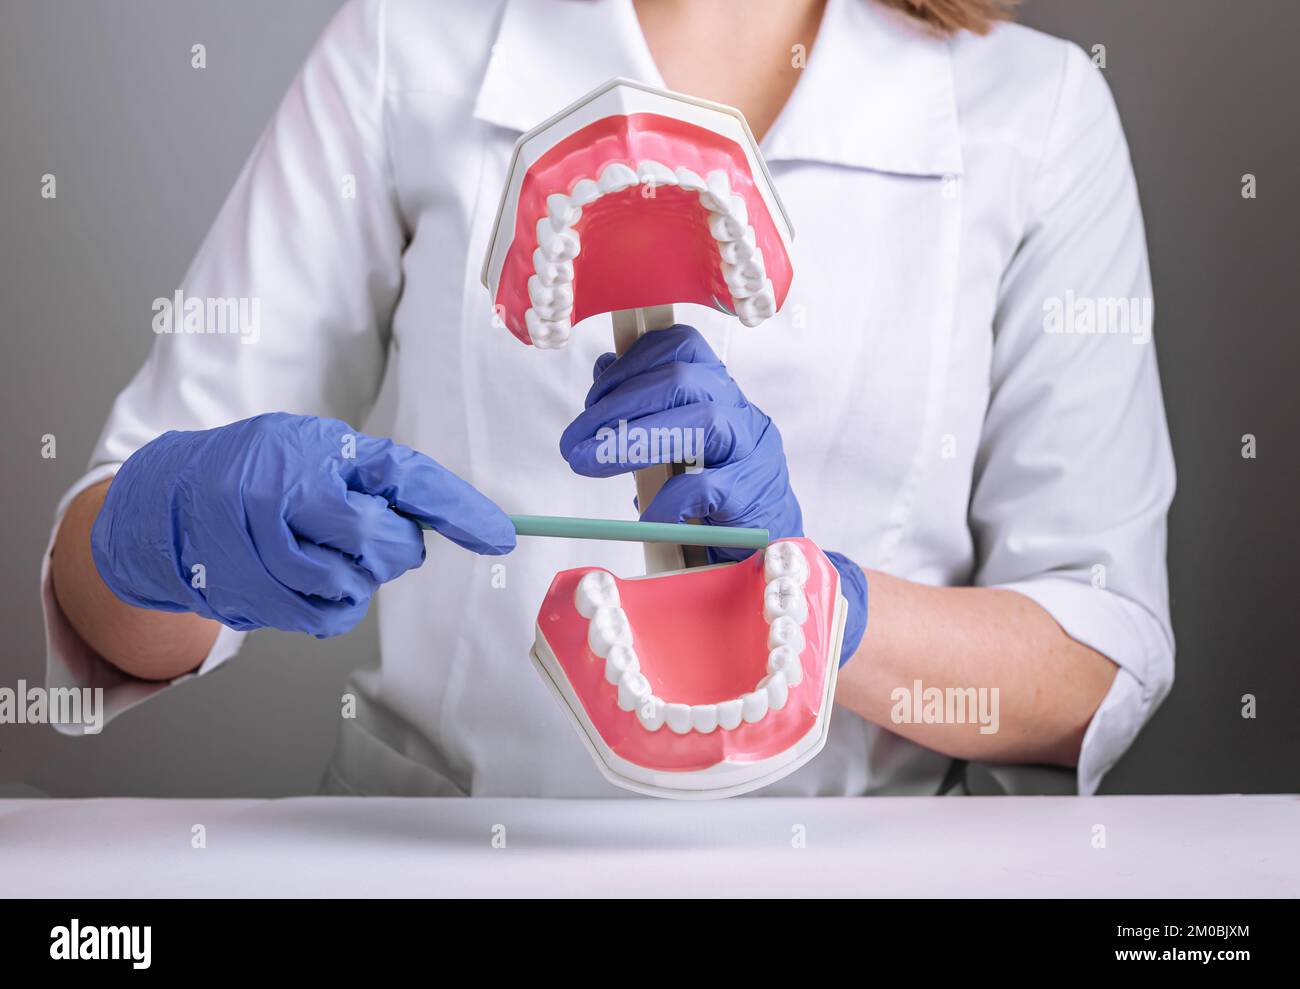 Dent de sagesse, troisième concept molaire. Médecin dentiste montrant des dents, fausse mâchoire artificielle modèle. Photo de haute qualité Banque D'Images